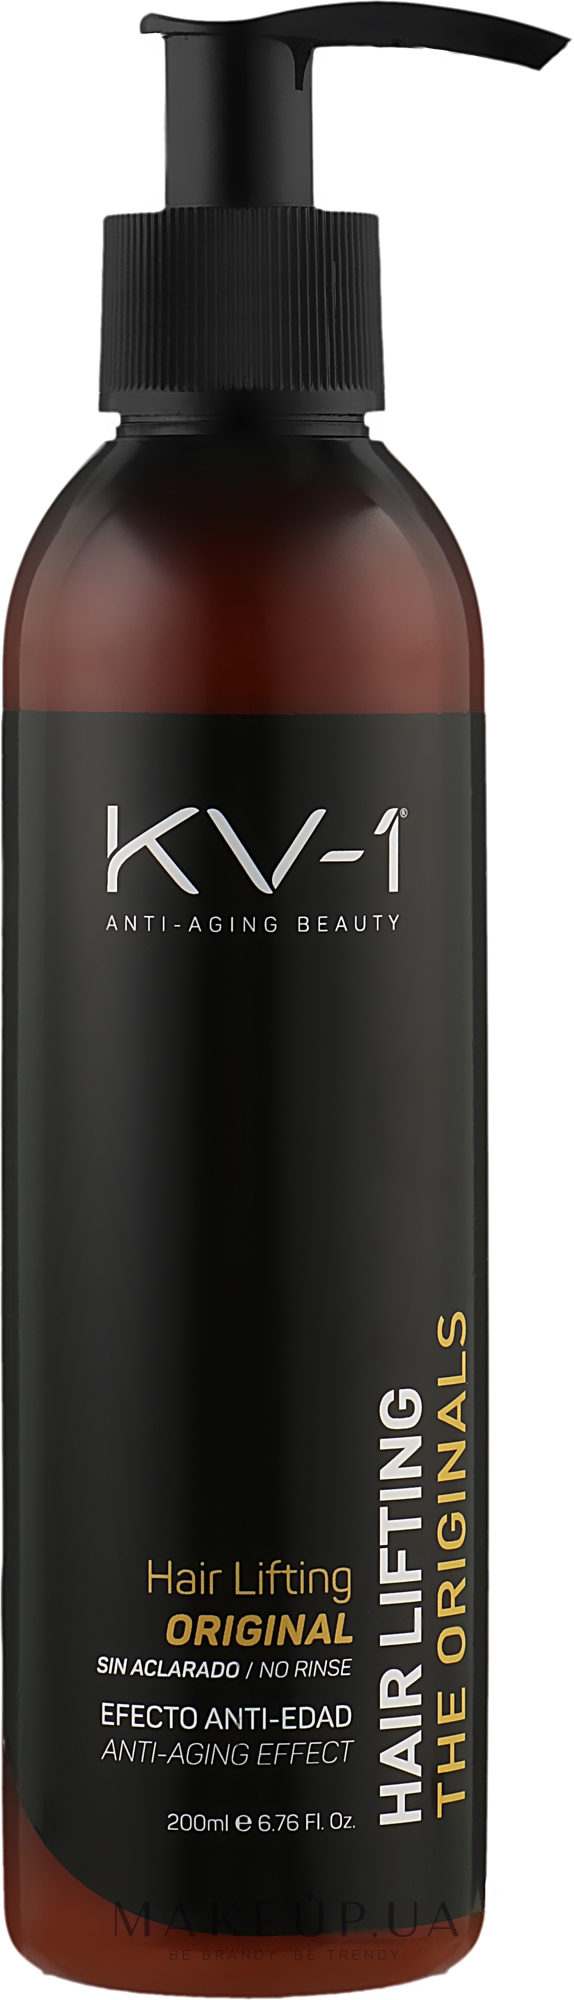 Несмываемый крем-лифтинг для волос - KV-1 The Originals Hair Lifting Cream — фото 200ml